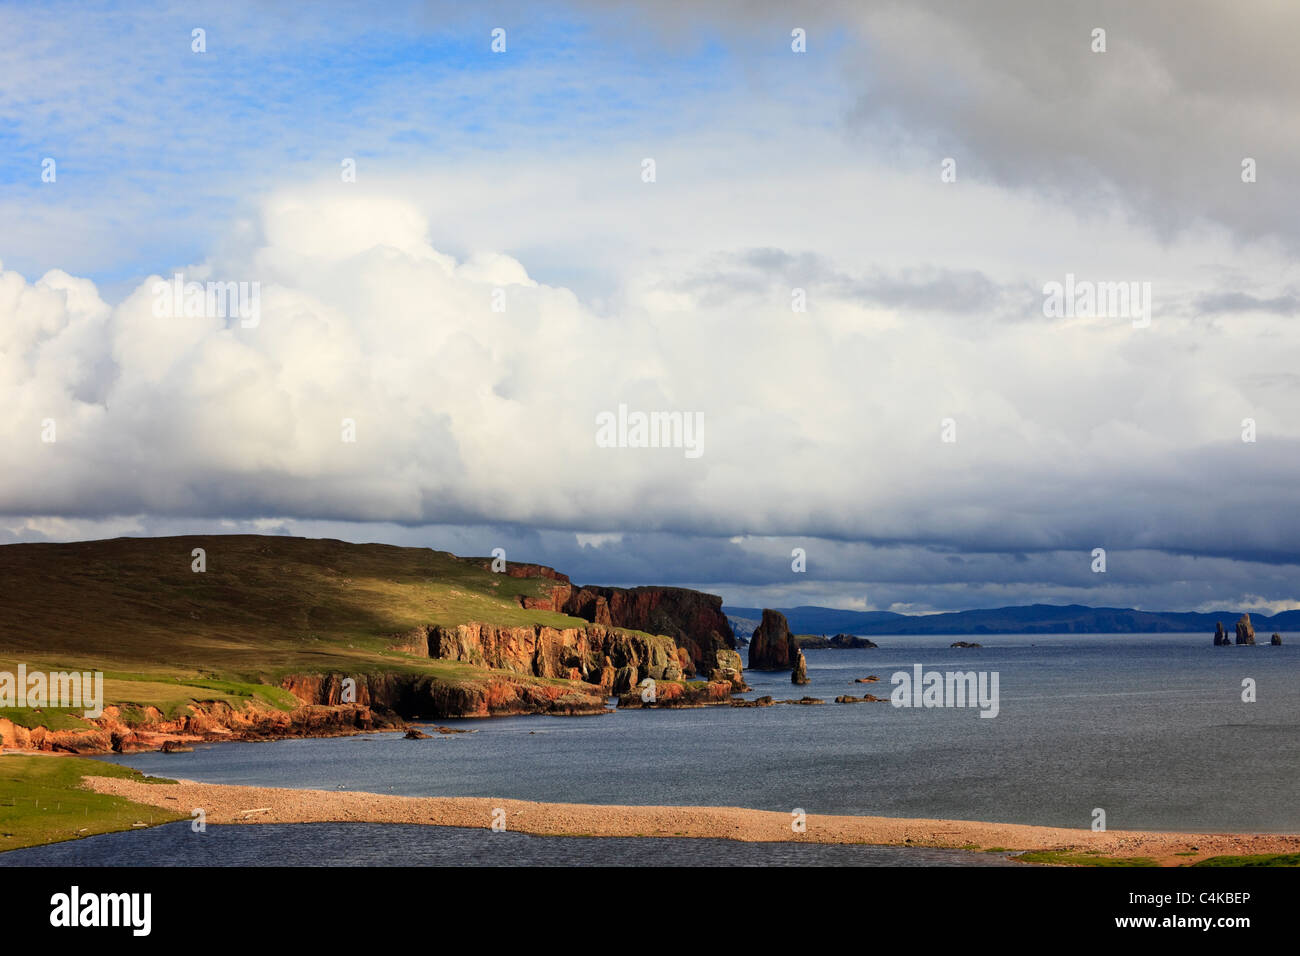 Il paesaggio costiero della vista sulla baia di Braewick al Neap scogliere e Drongs di arenaria rossa e pile di mare. Eshaness, isole Shetland, Scotland, Regno Unito. Foto Stock